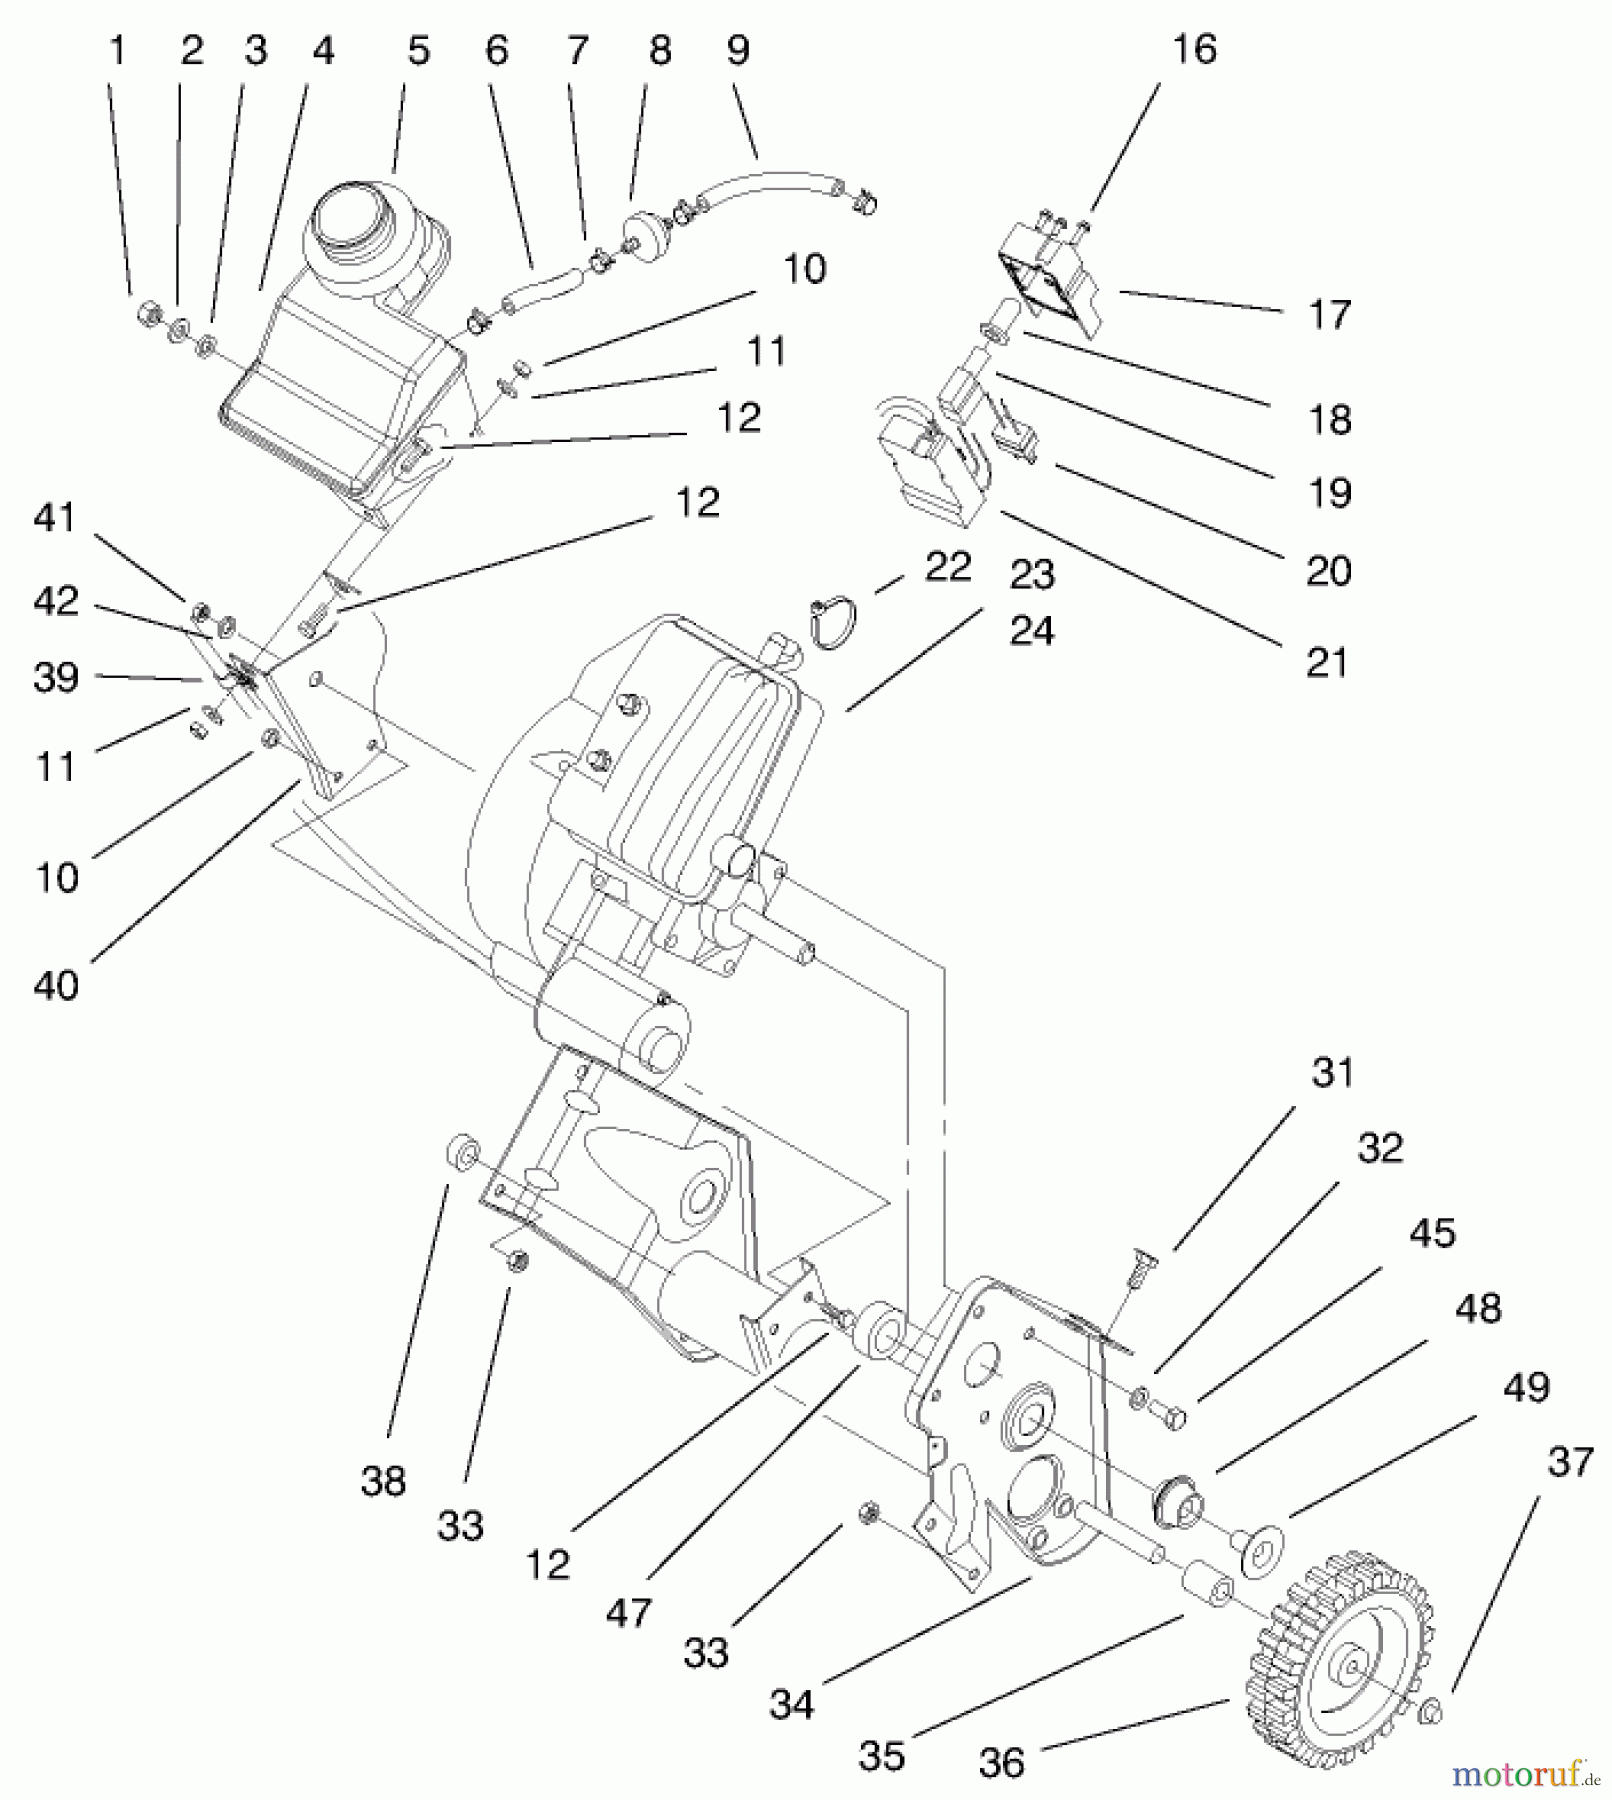  Toro Neu Snow Blowers/Snow Throwers Seite 1 38430 (3000) - Toro CCR 3000 Snowthrower, 1999 (9900001-9999999) ENGINE & GAS TANK ASSEMBLY